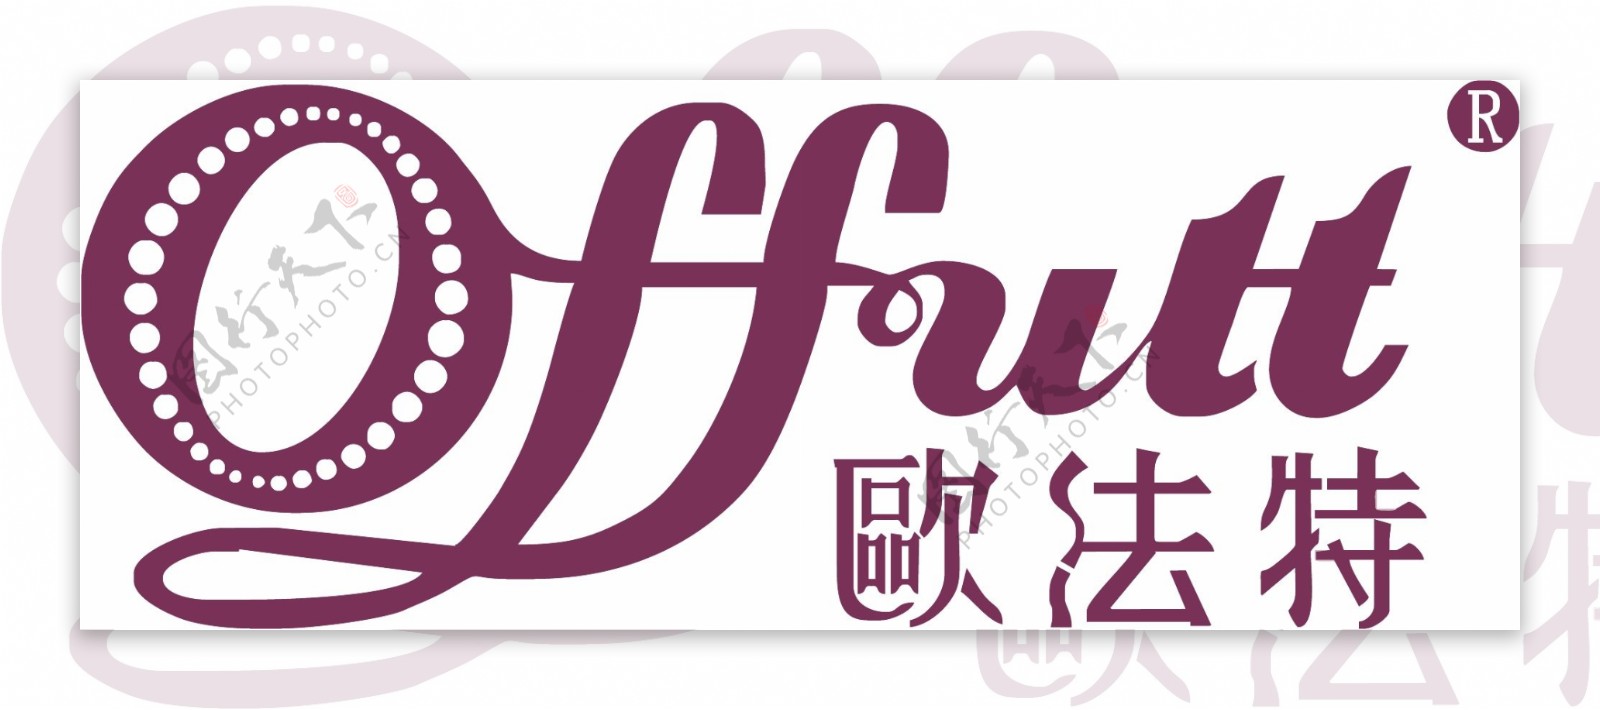 欧法特logo图片